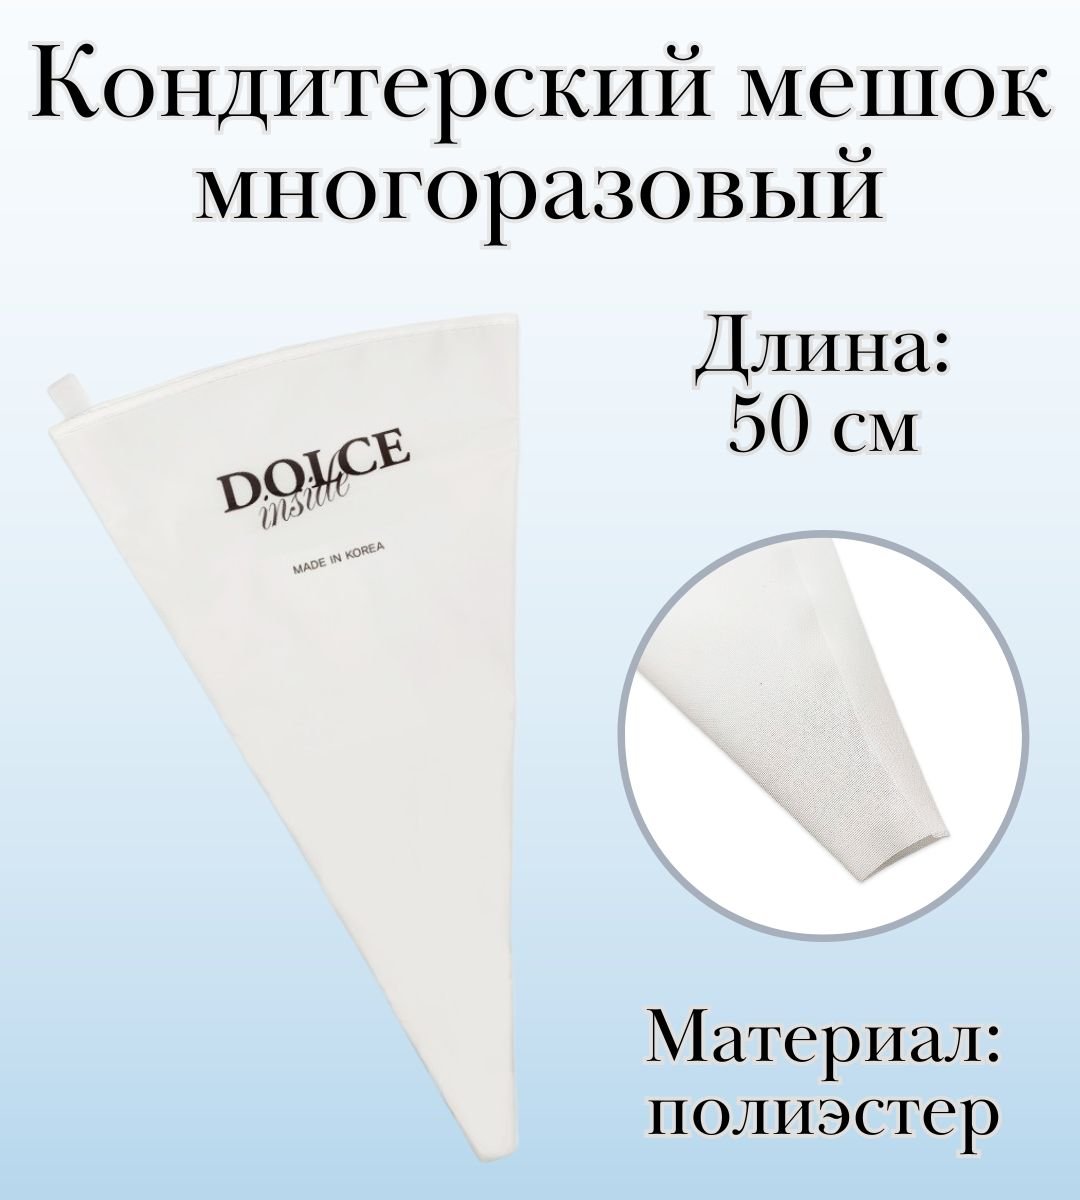 Мешок кондитерский многоразовый Dolce Inside, L=50 см